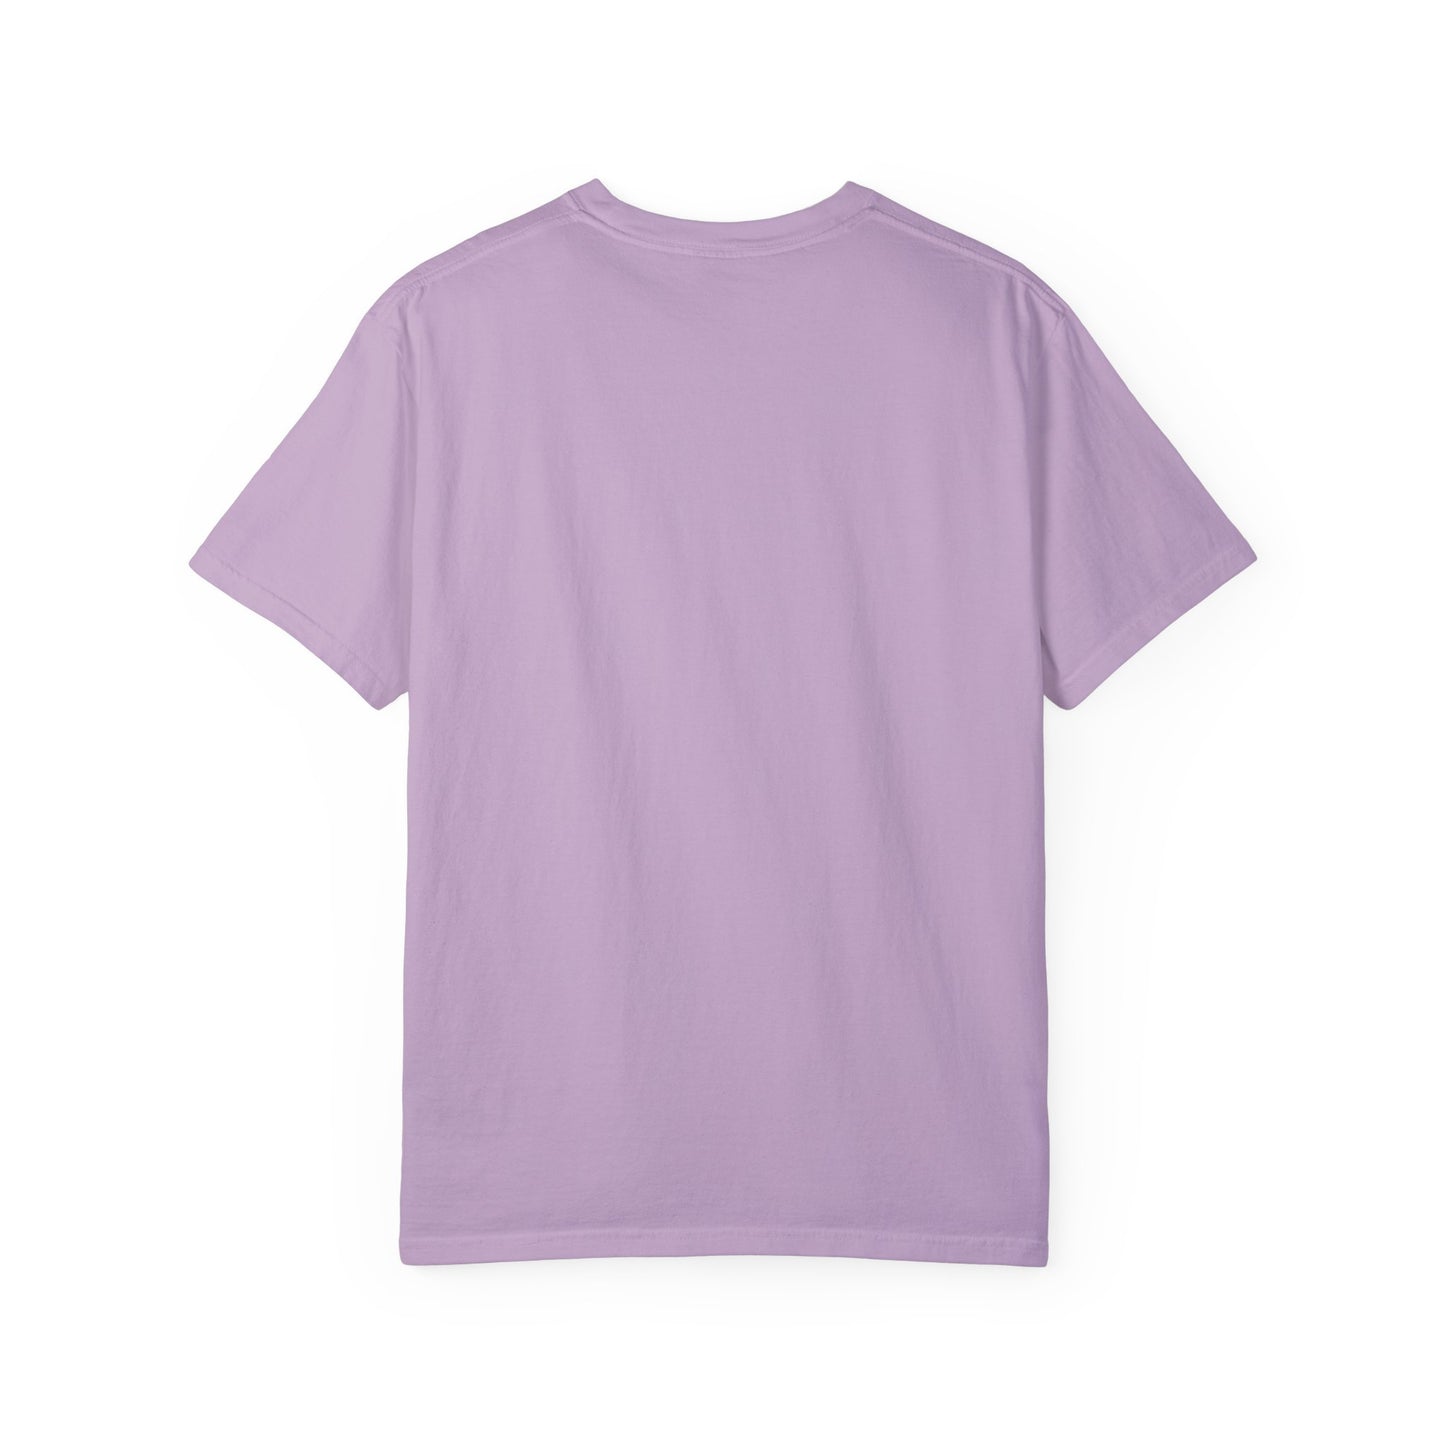 Wear Your WarPaint - Unisex Garment-Dyed T-shirt